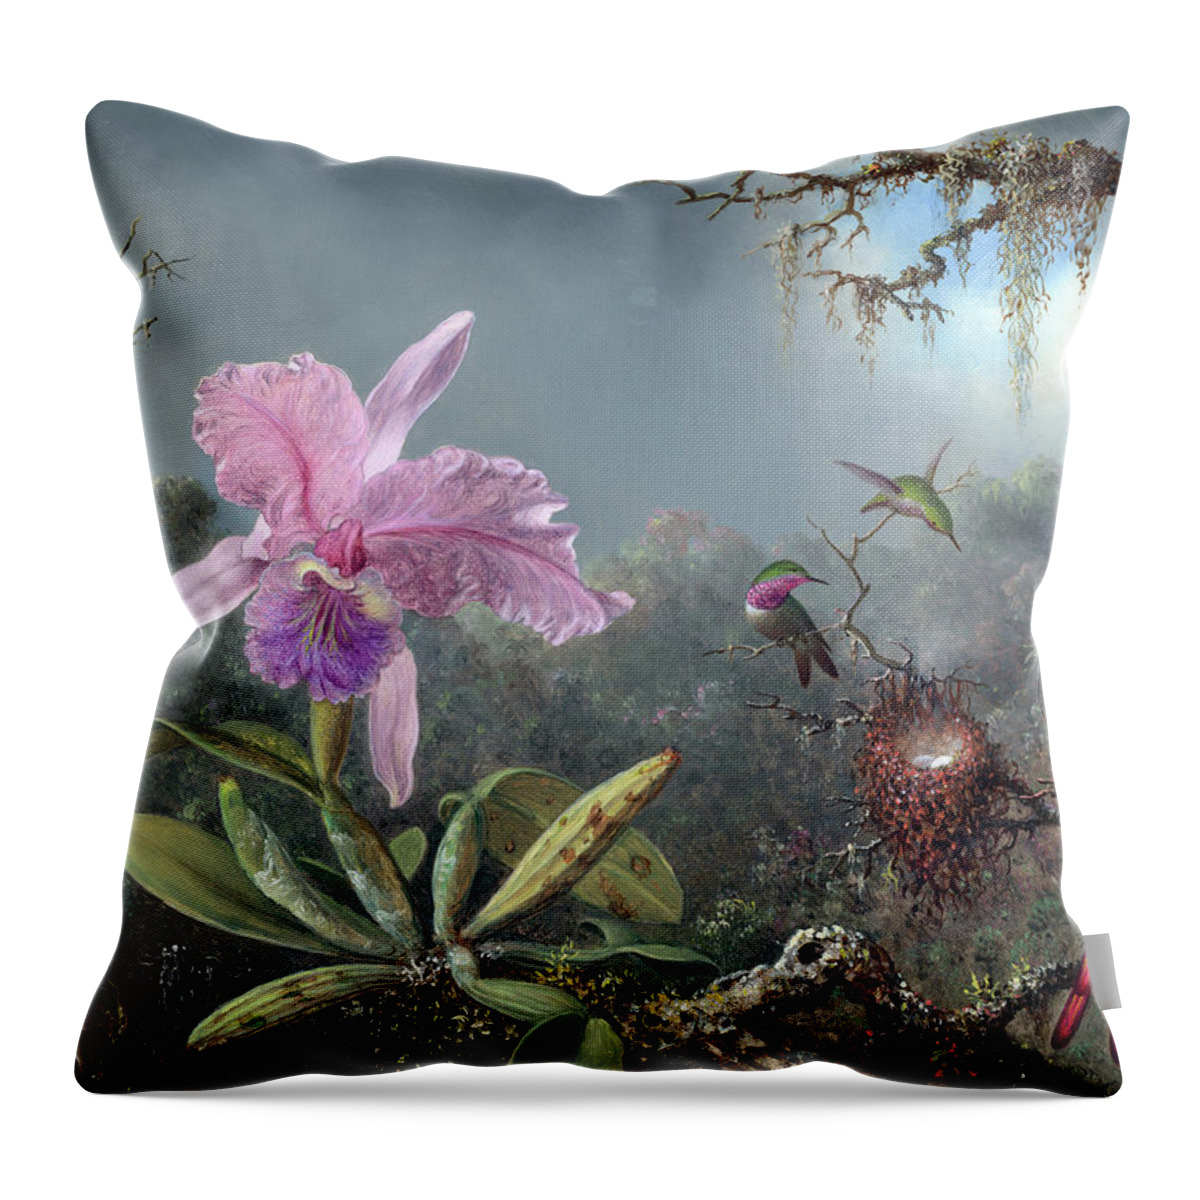 Cattleya Throw Pillow featuring the digital art Orchid Flower by Long Shot